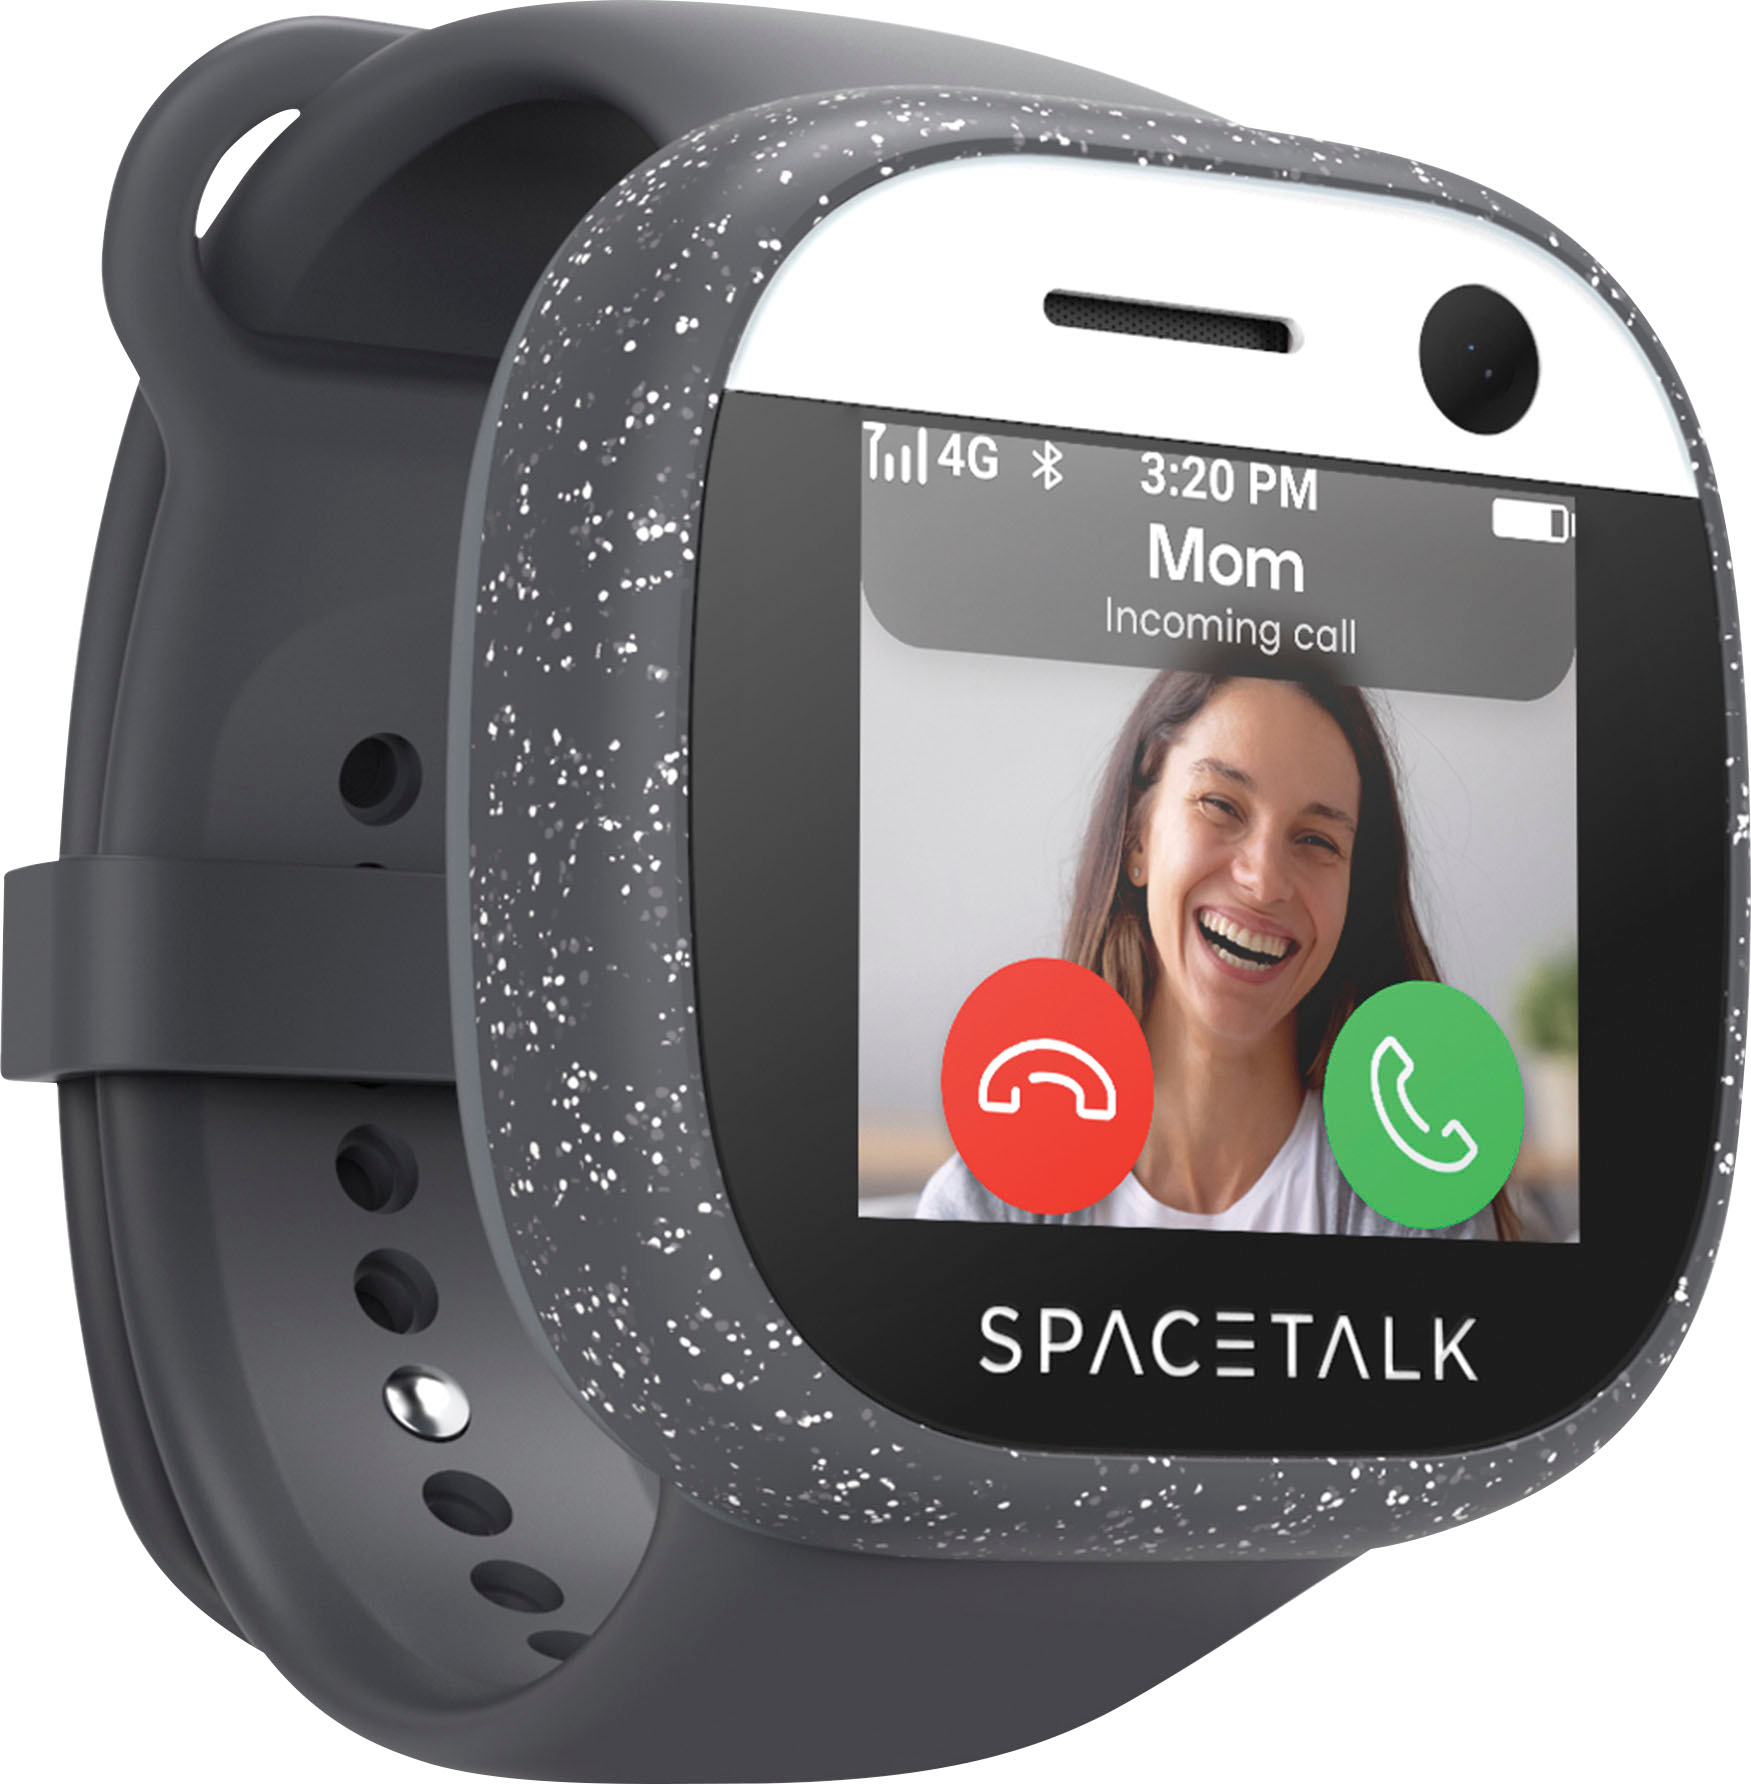 Spacetalk Adventurer 4G Kids Smart Watch Phone and GPS Tracker Midnight ST2-MN-2 - Buy